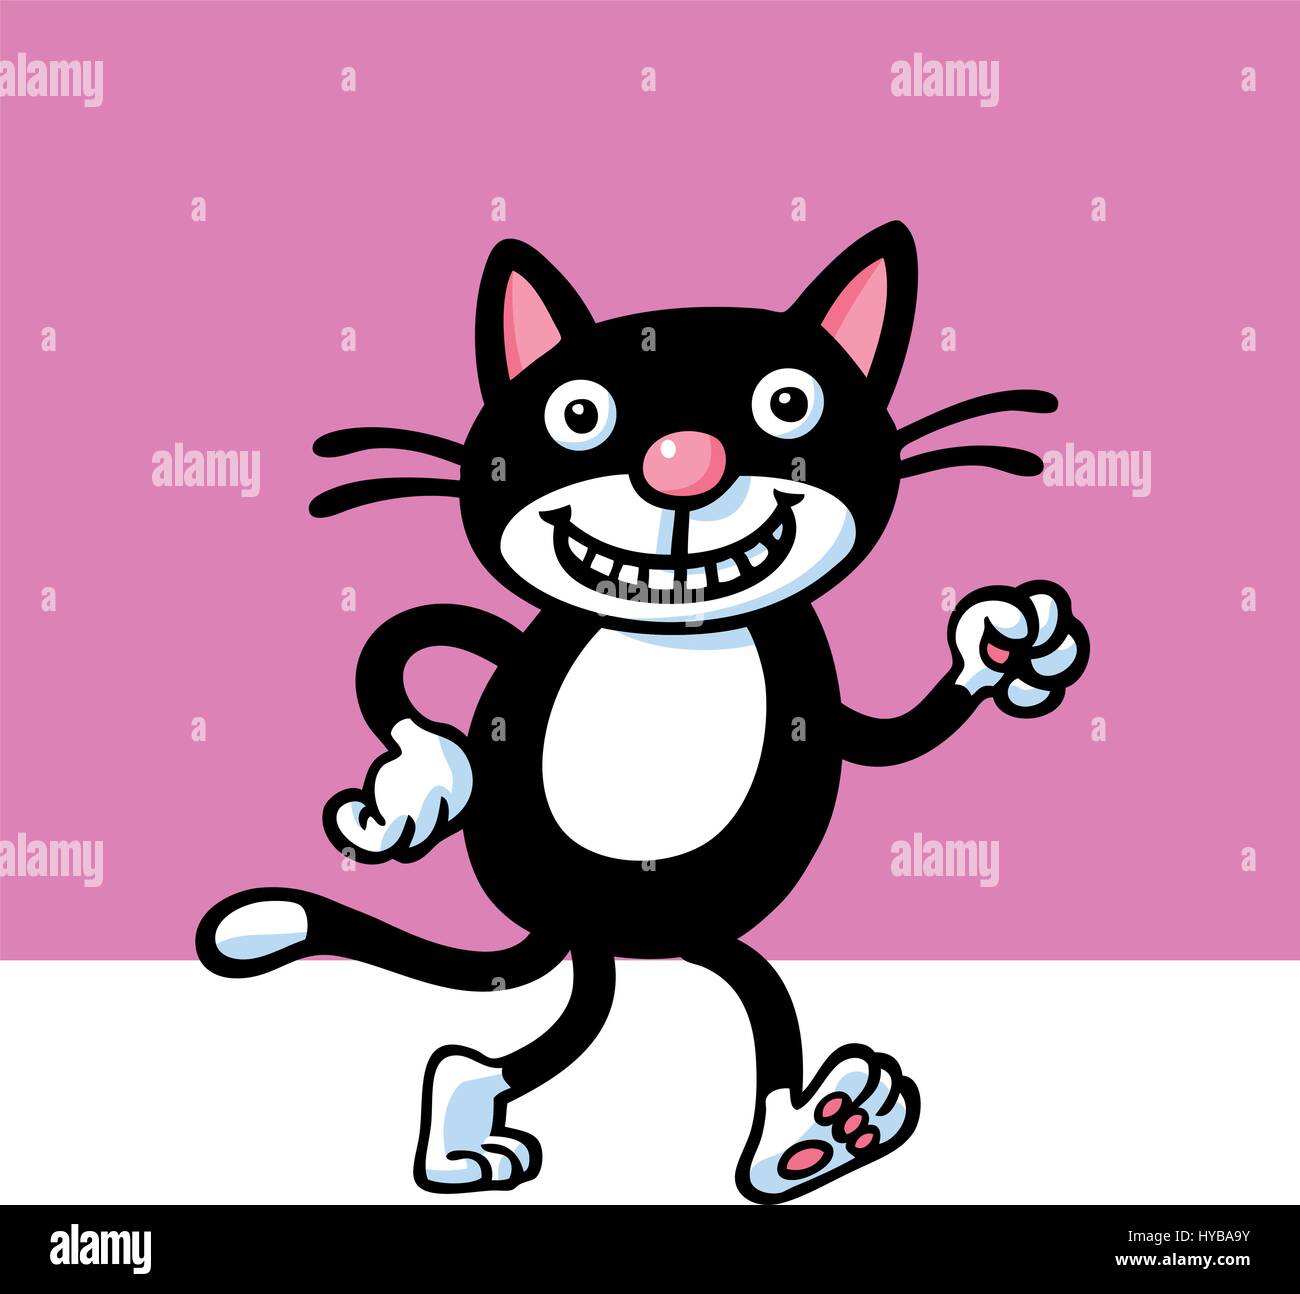 Divertente gatto nero. illustrazione vettoriale. Illustrazione Vettoriale